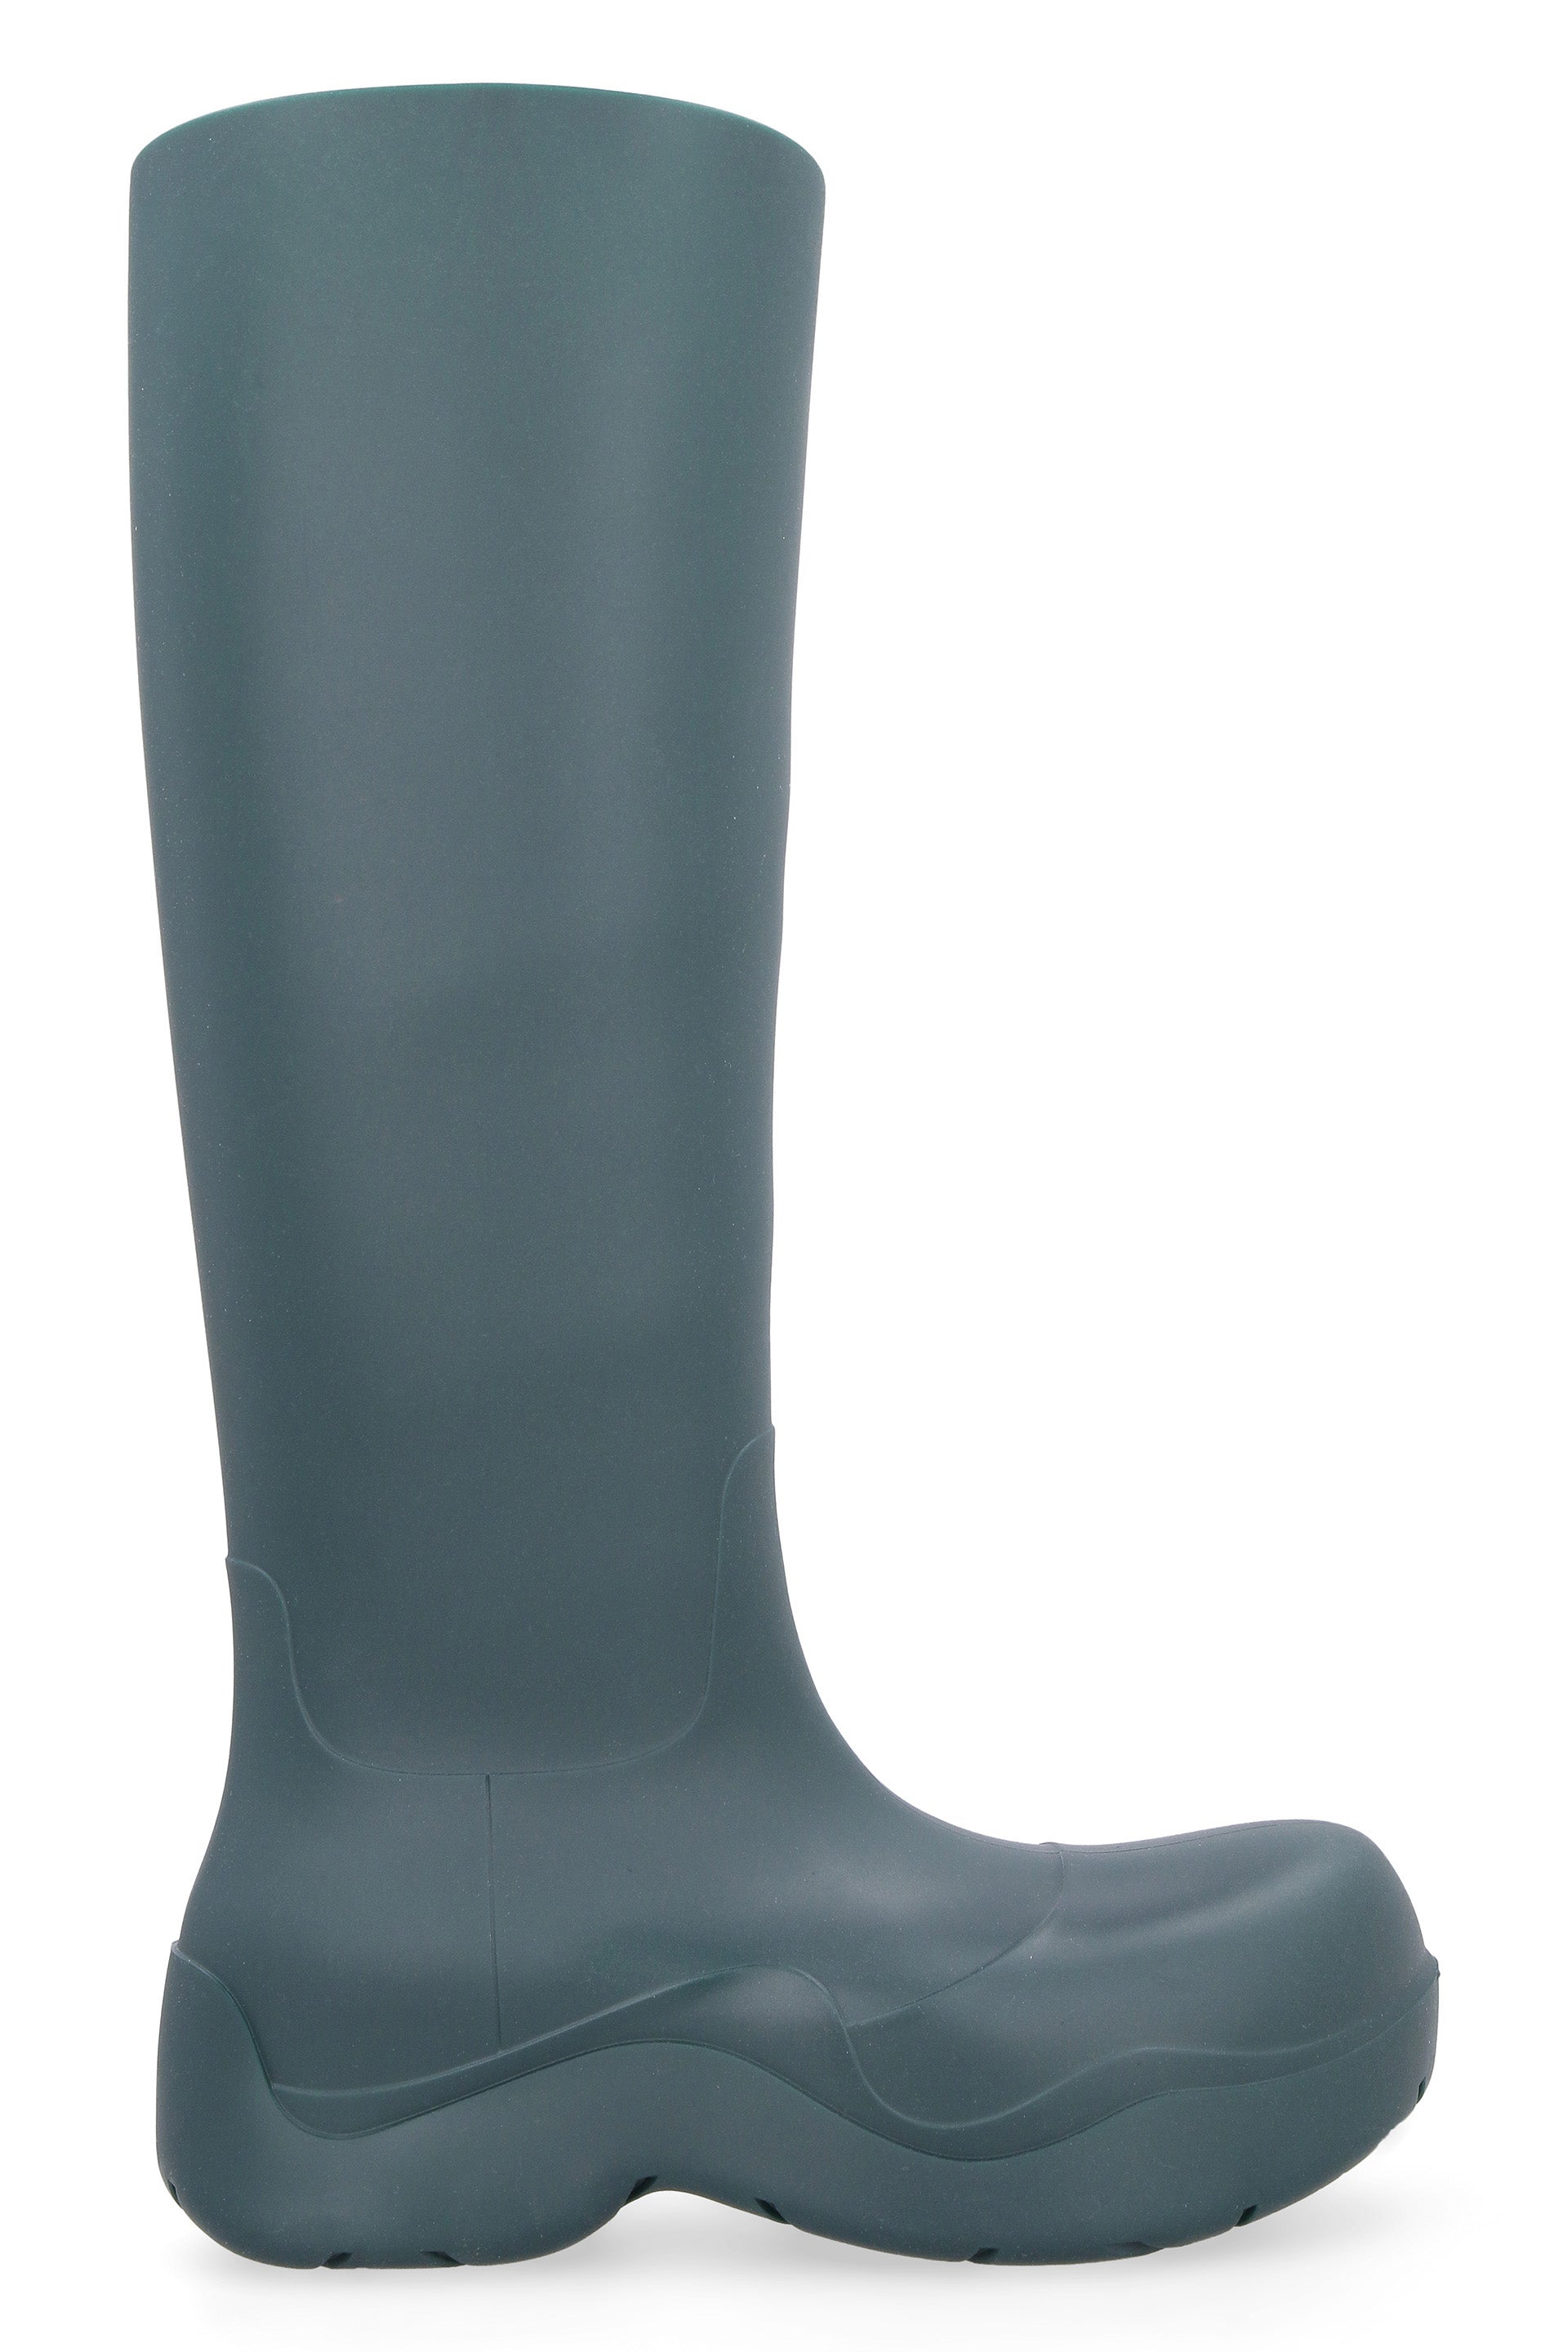 Puddle rubber boots-Bottega Veneta-OUTLET-SALE-ARCHIVIST